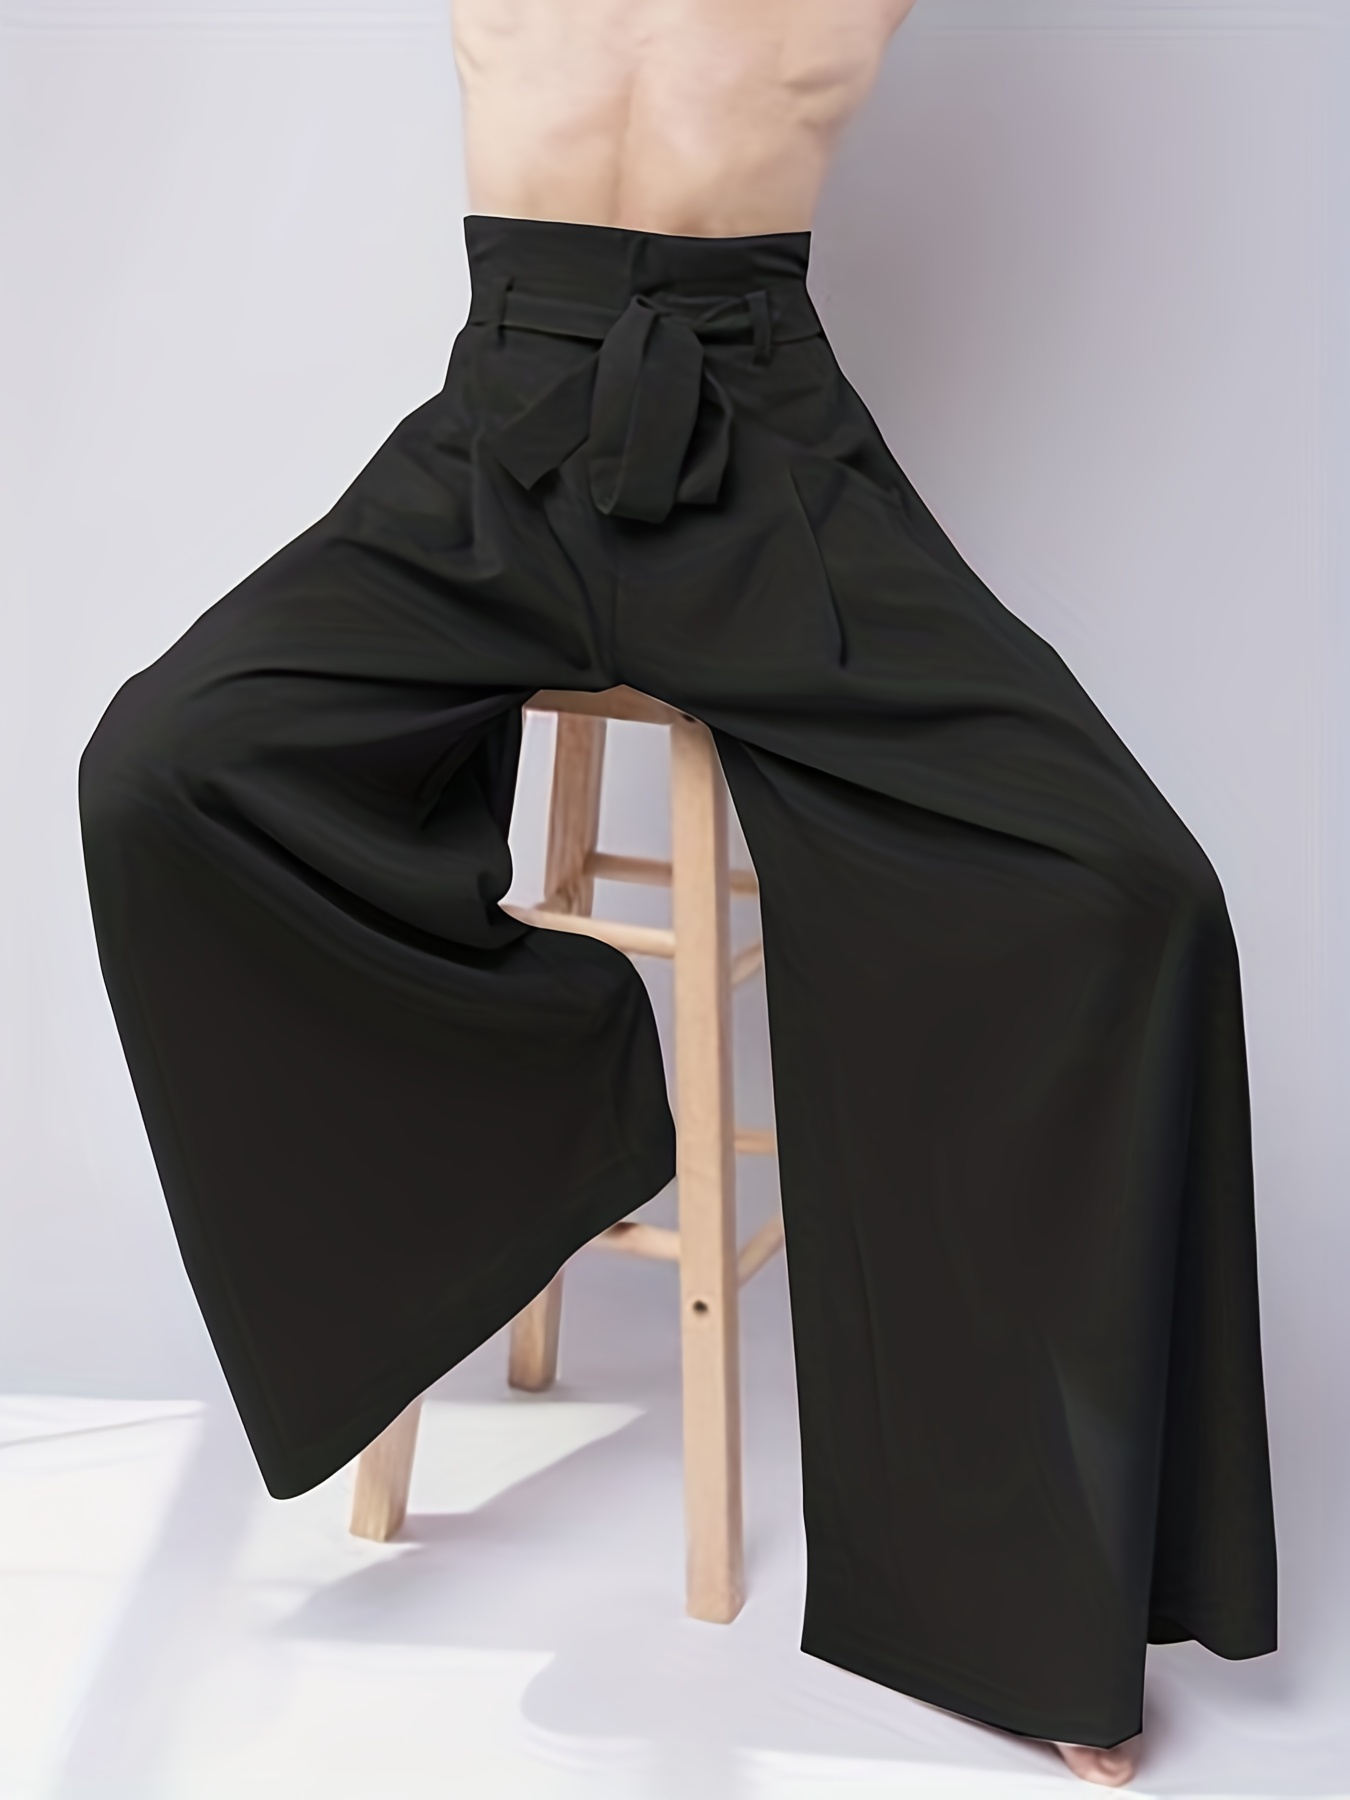  Baggy Pants, Fashion Baggy Pants Unique Design for